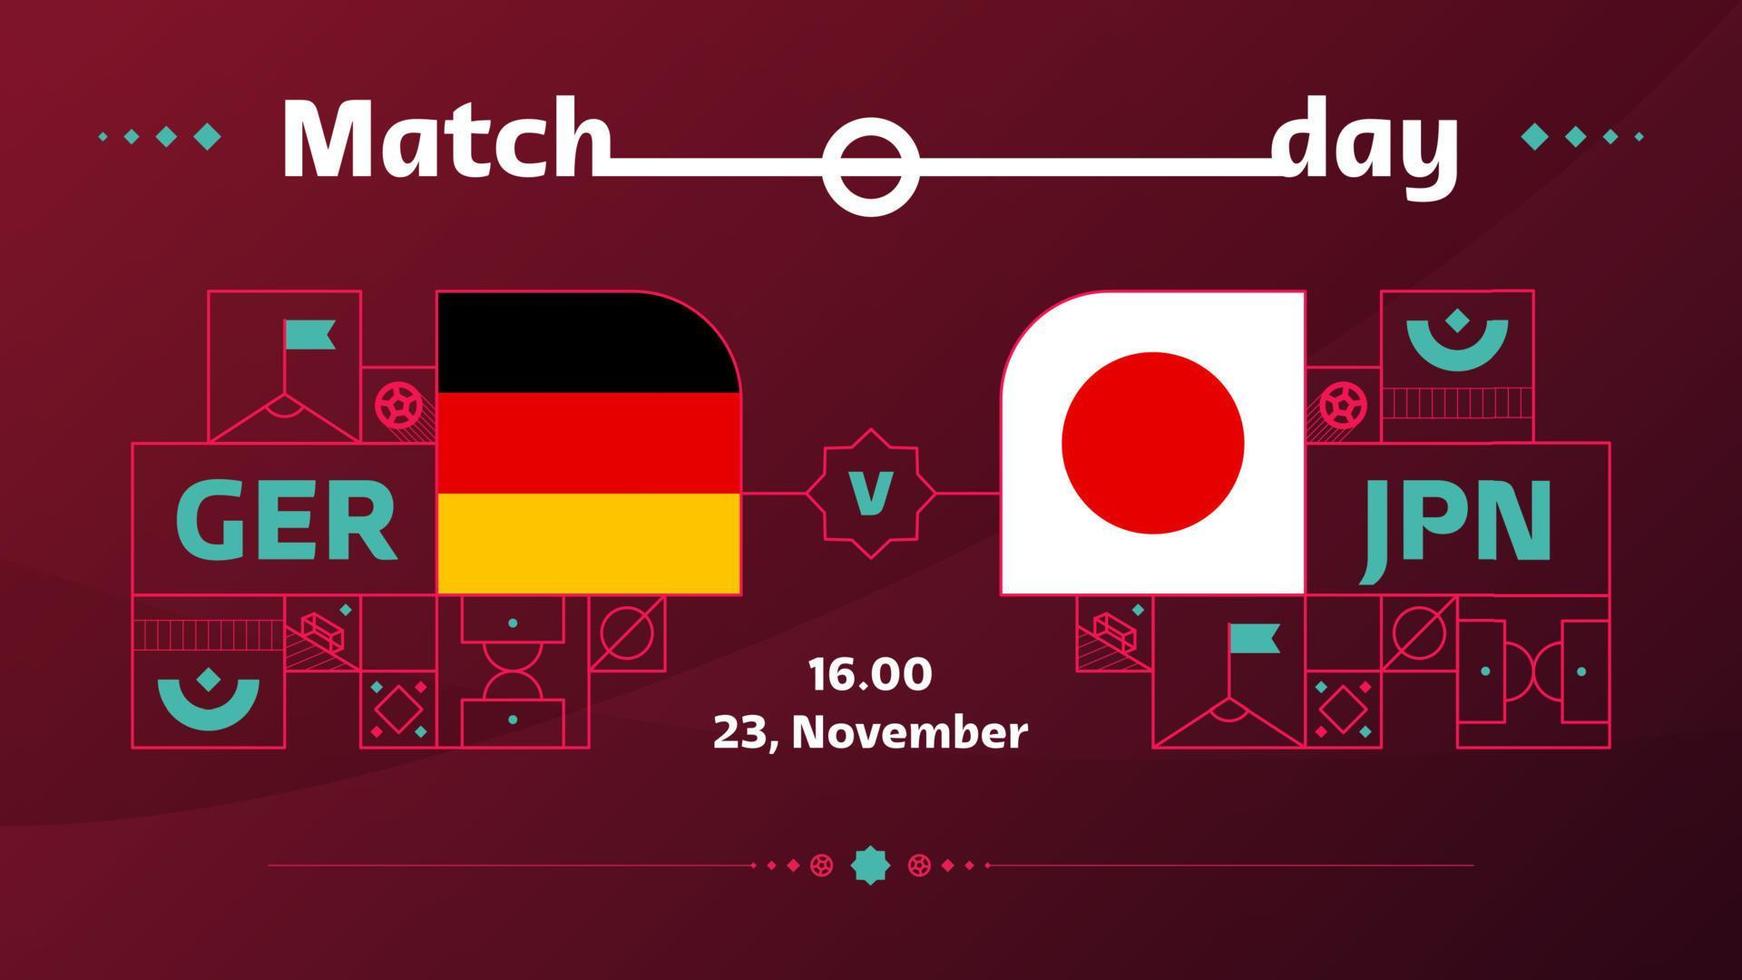 Duitsland Japan bij elkaar passen Amerikaans voetbal 2022. 2022 wereld Amerikaans voetbal wedstrijd kampioenschap bij elkaar passen versus teams intro sport achtergrond, kampioenschap wedstrijd poster, vector illustratie